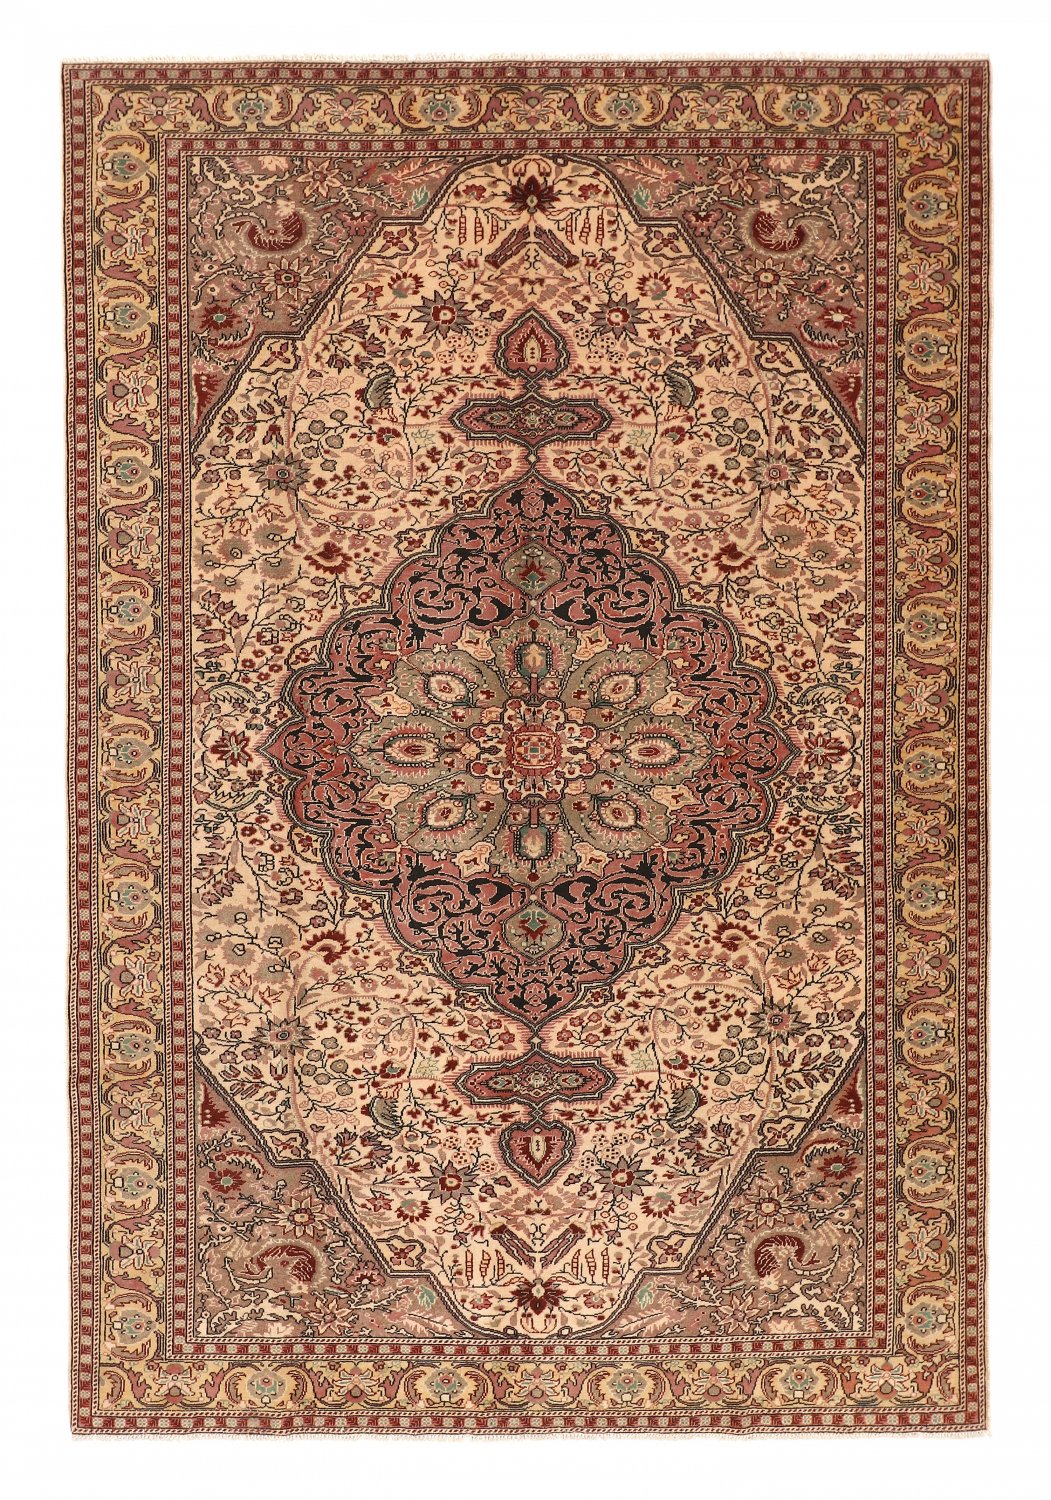 Persian rug Hamedan 288 x 200 cm